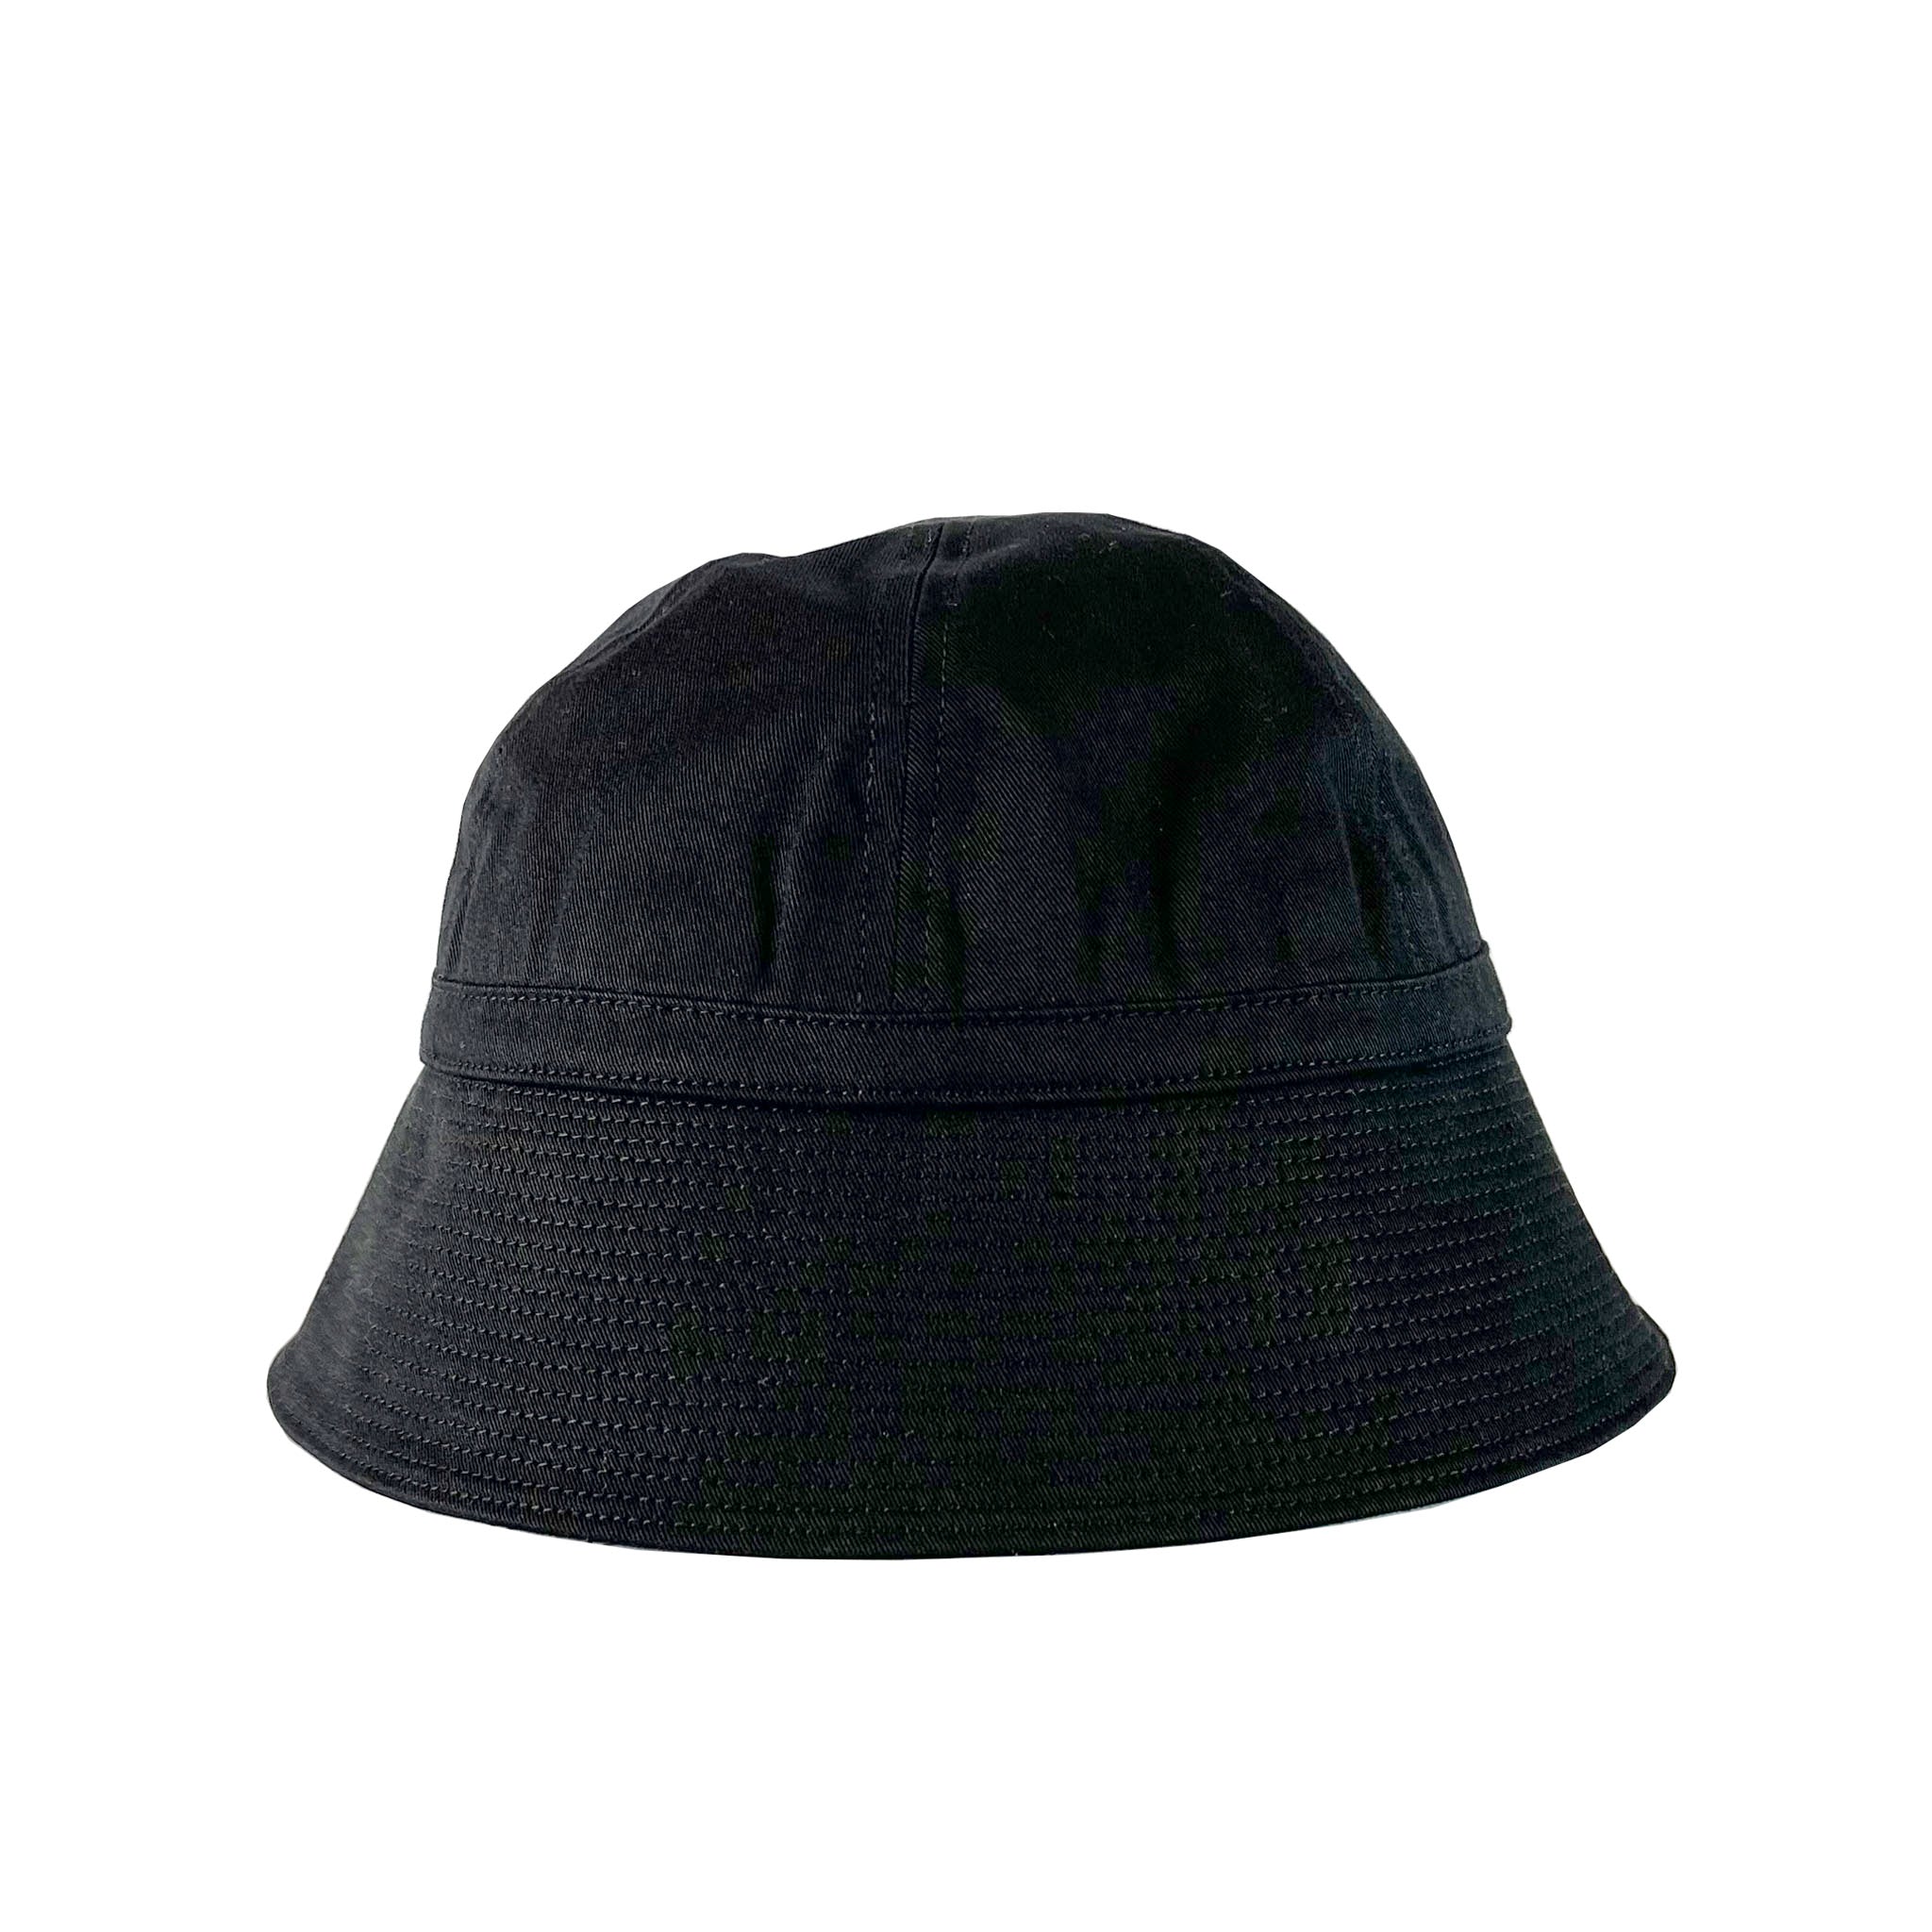 SAILOR HAT – 帽子通販 -レックハッターストア-